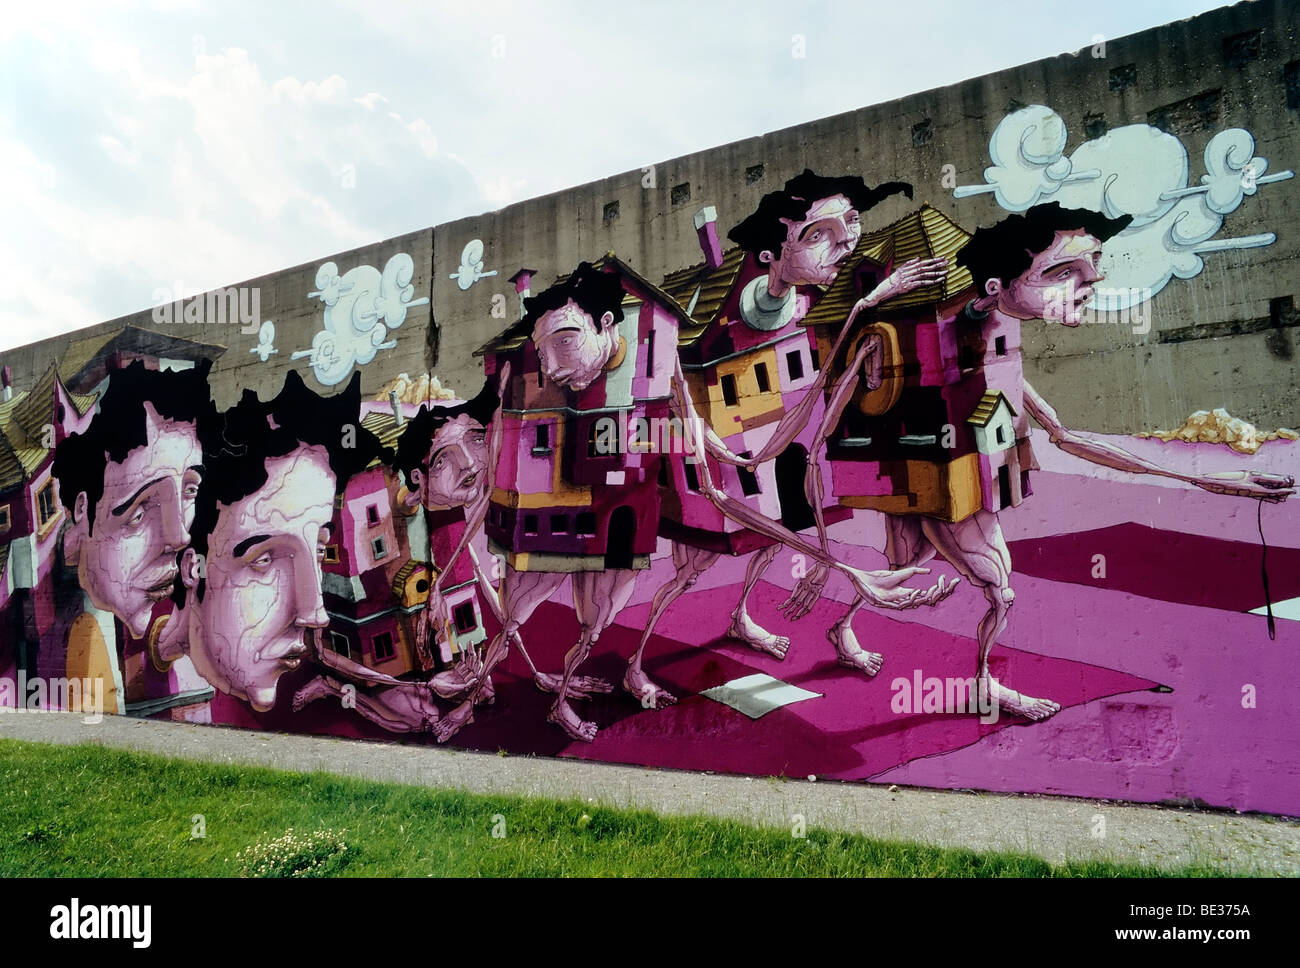 Les gens de la chambre, par la vision surréaliste de l'artiste graffiti Karlsruhe Christian Kraemer aka Dome, Rheinpark, Duisburg-Hochfeld, Ru Banque D'Images